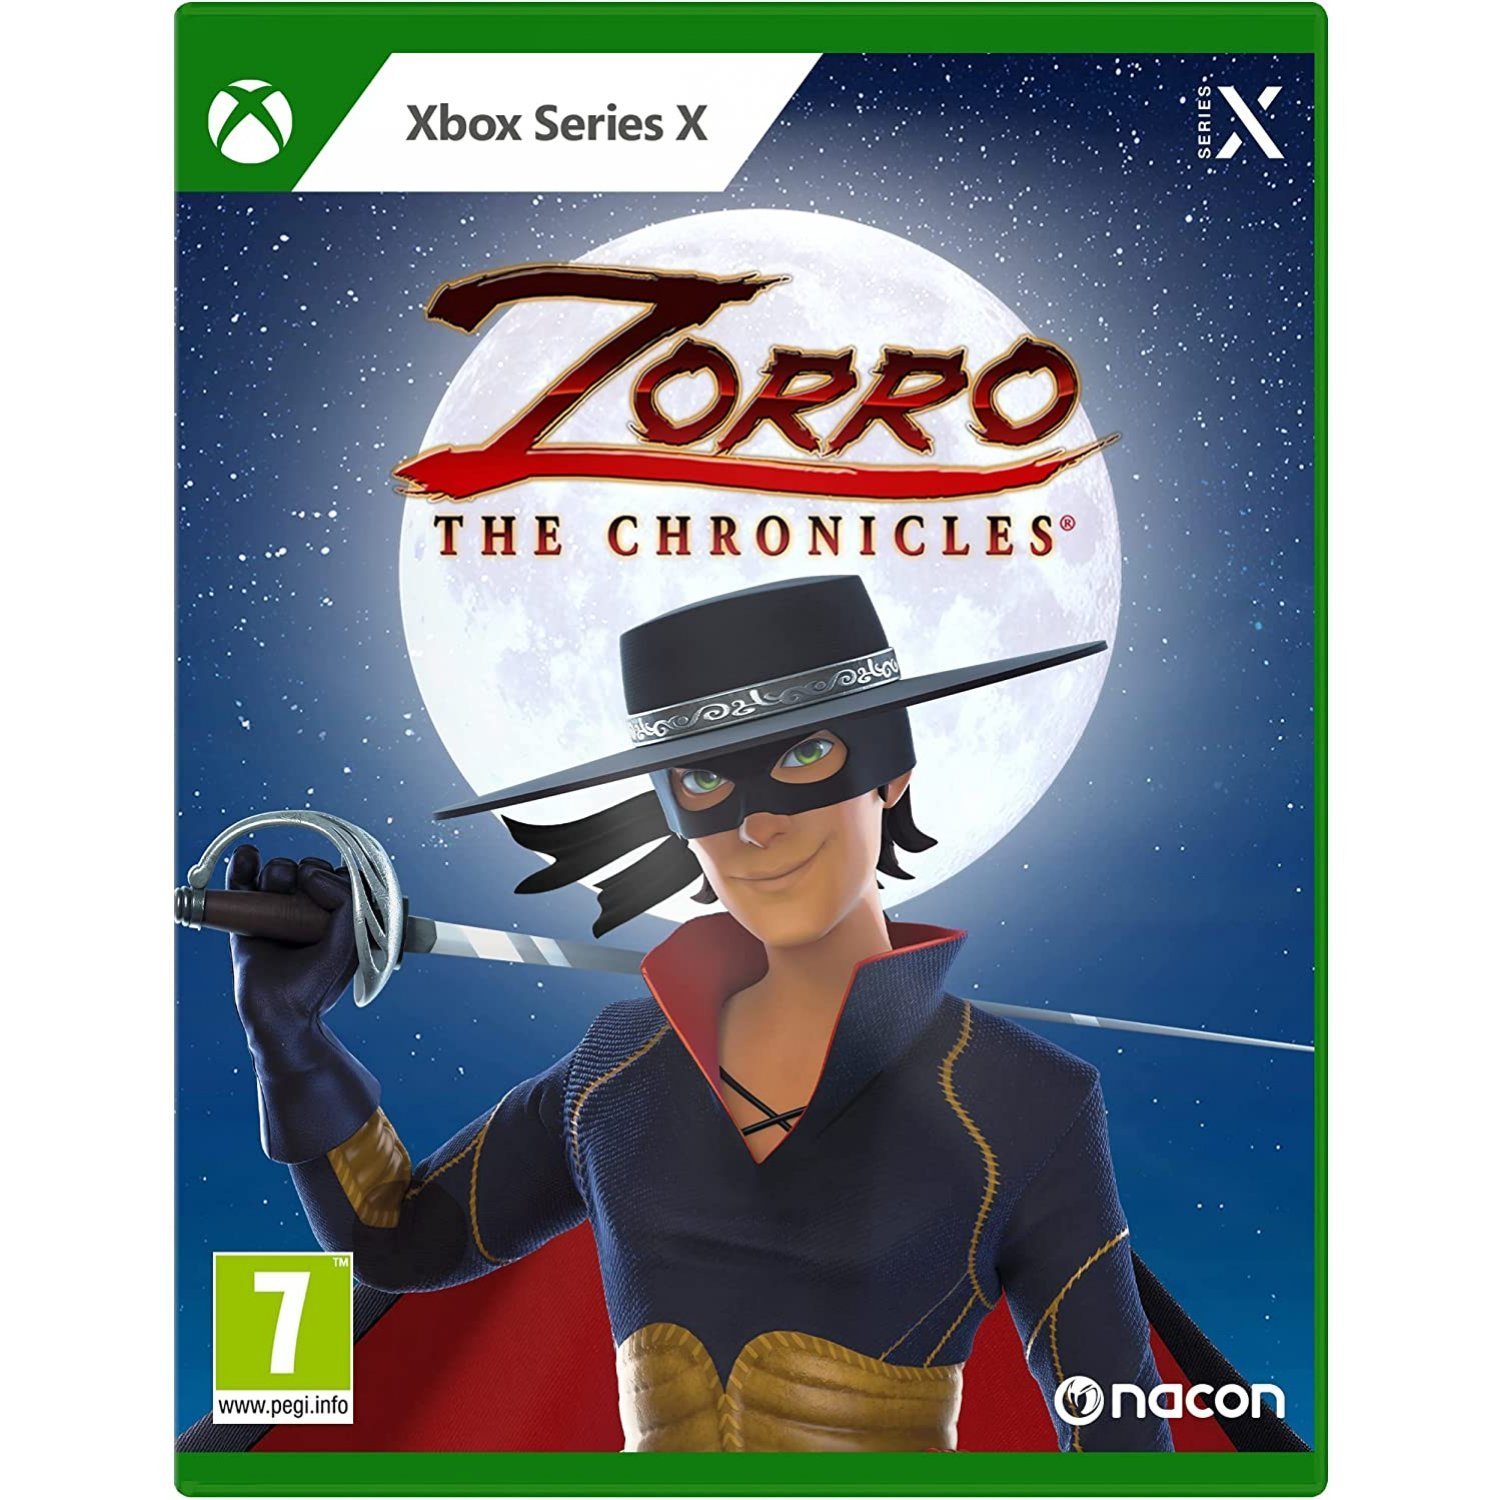 Zorro: The Chronicles von Nacon